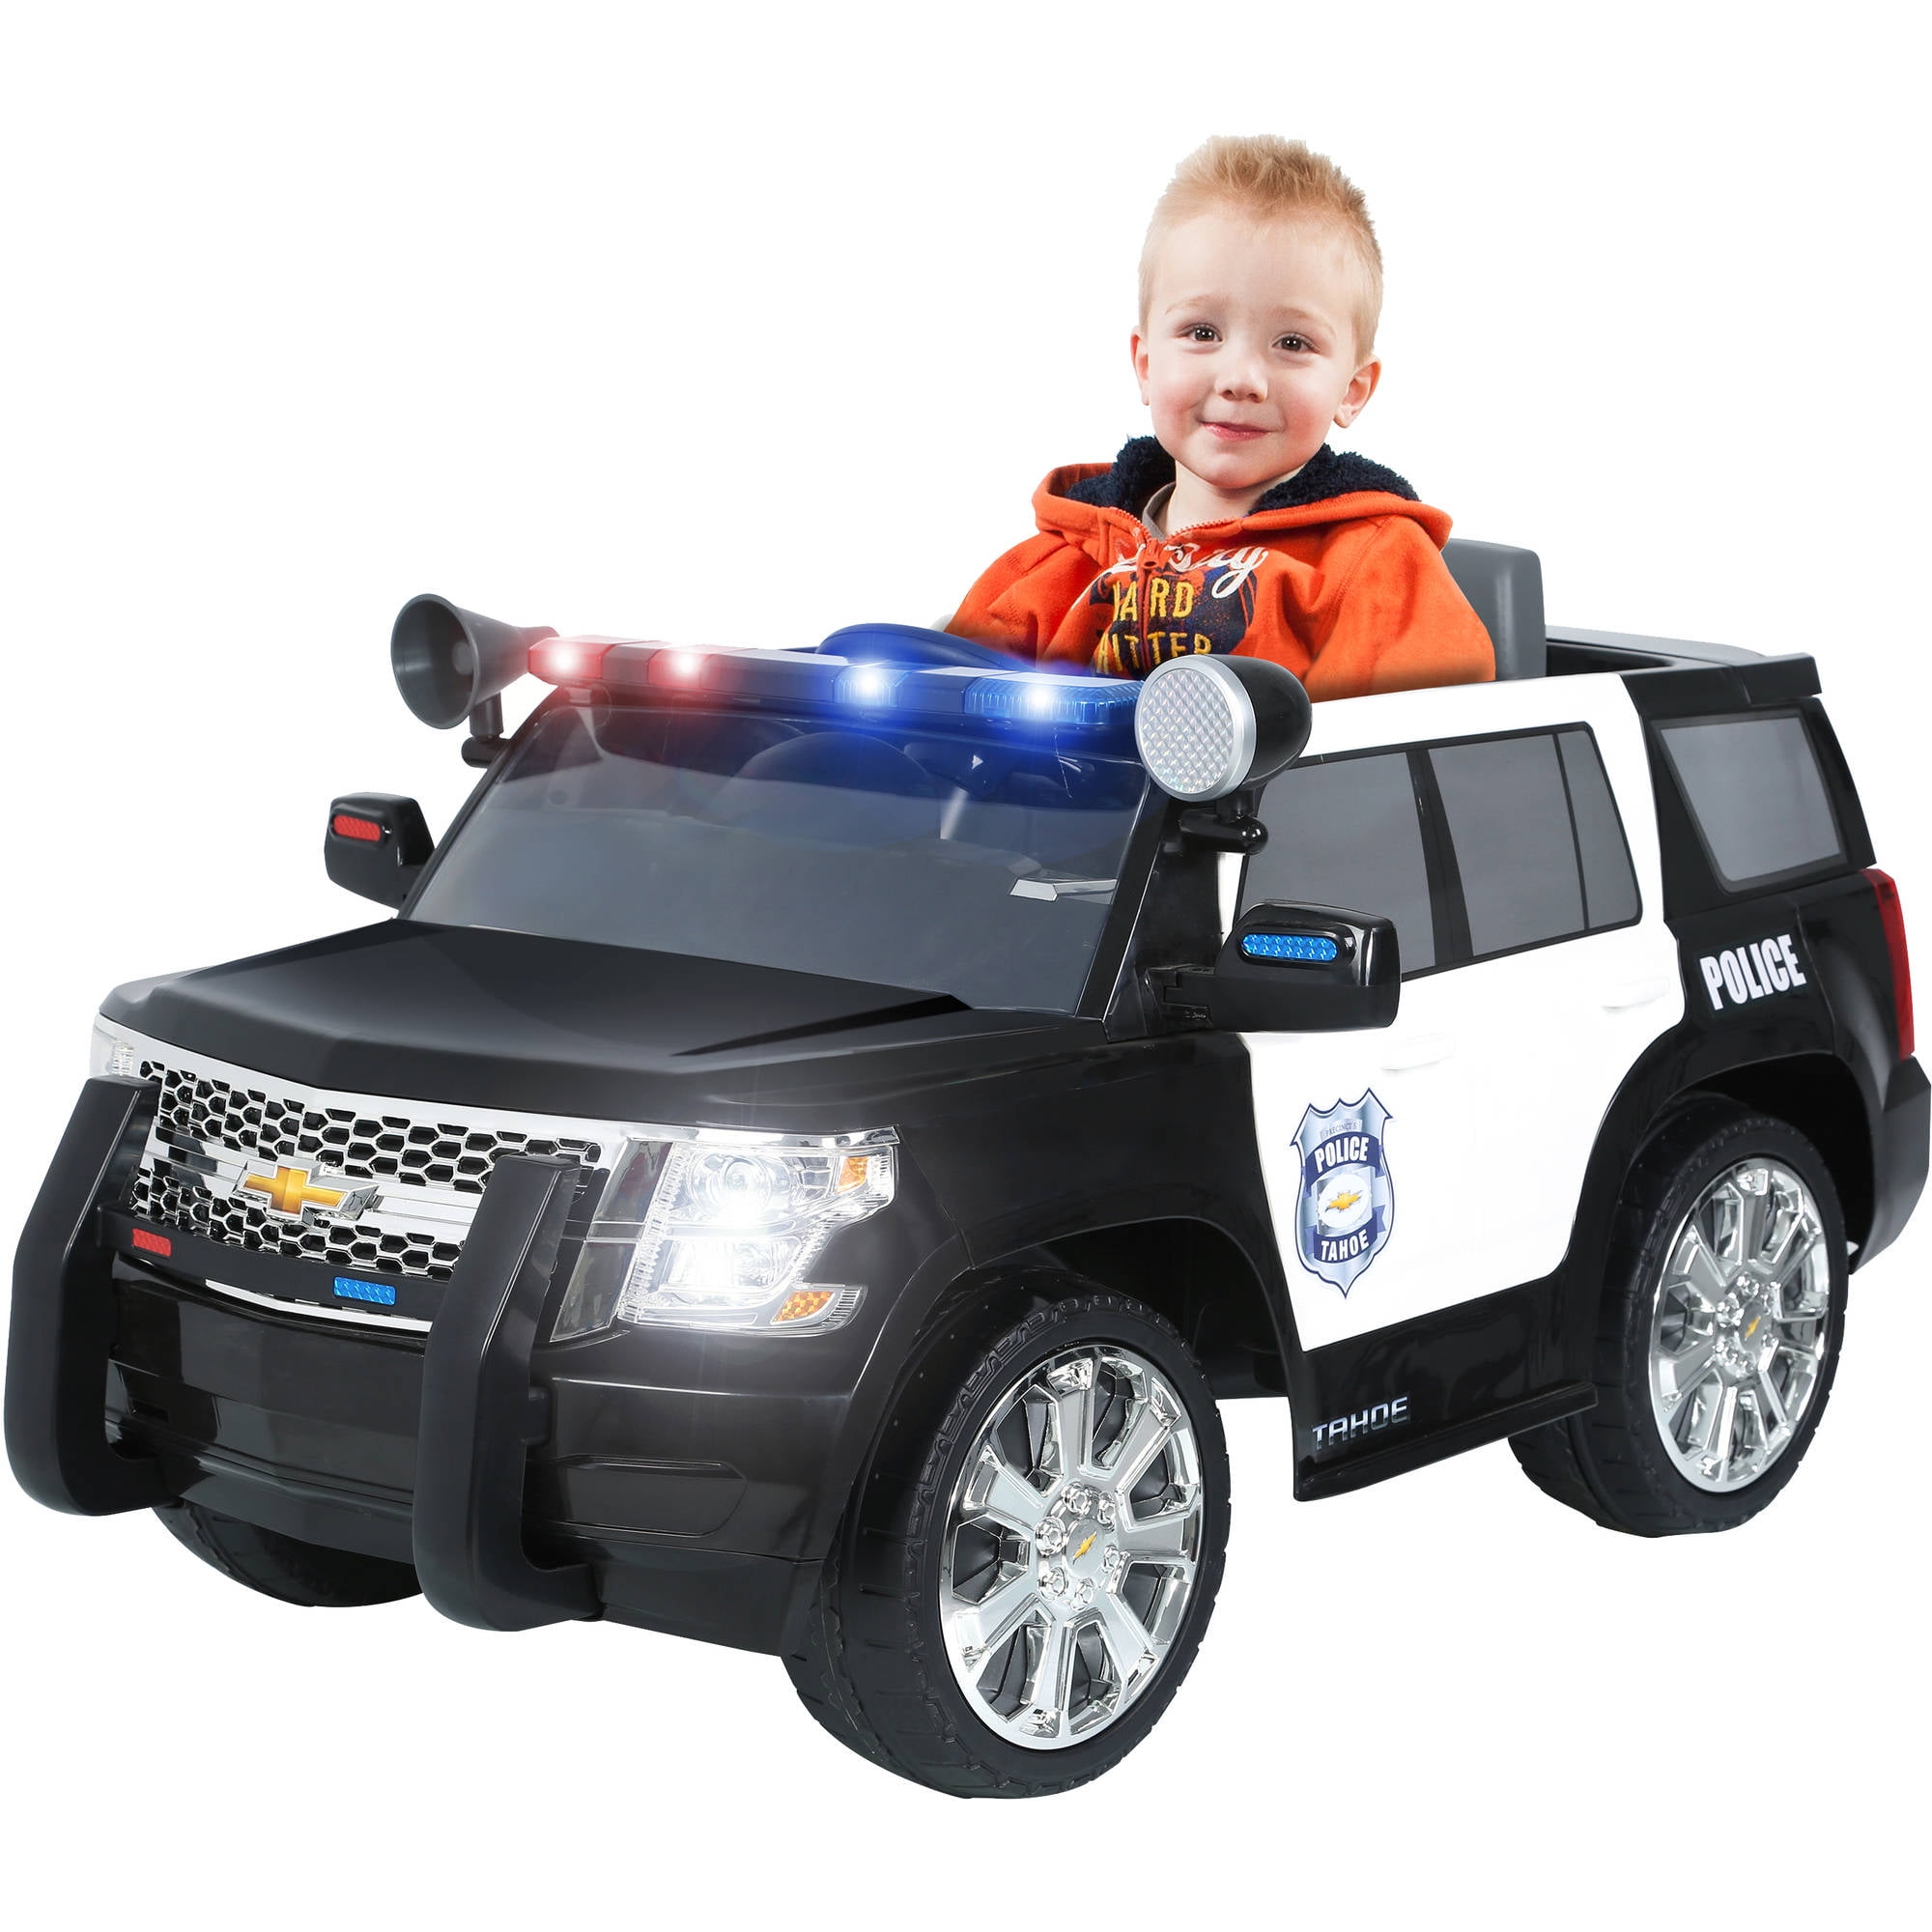 Есть детские машинки. Kids cars автомобиль Police kt6598. Электромобиль Шевроле Тахо. Электромобиль детский Tahoe. Детский электромобиль полиция.